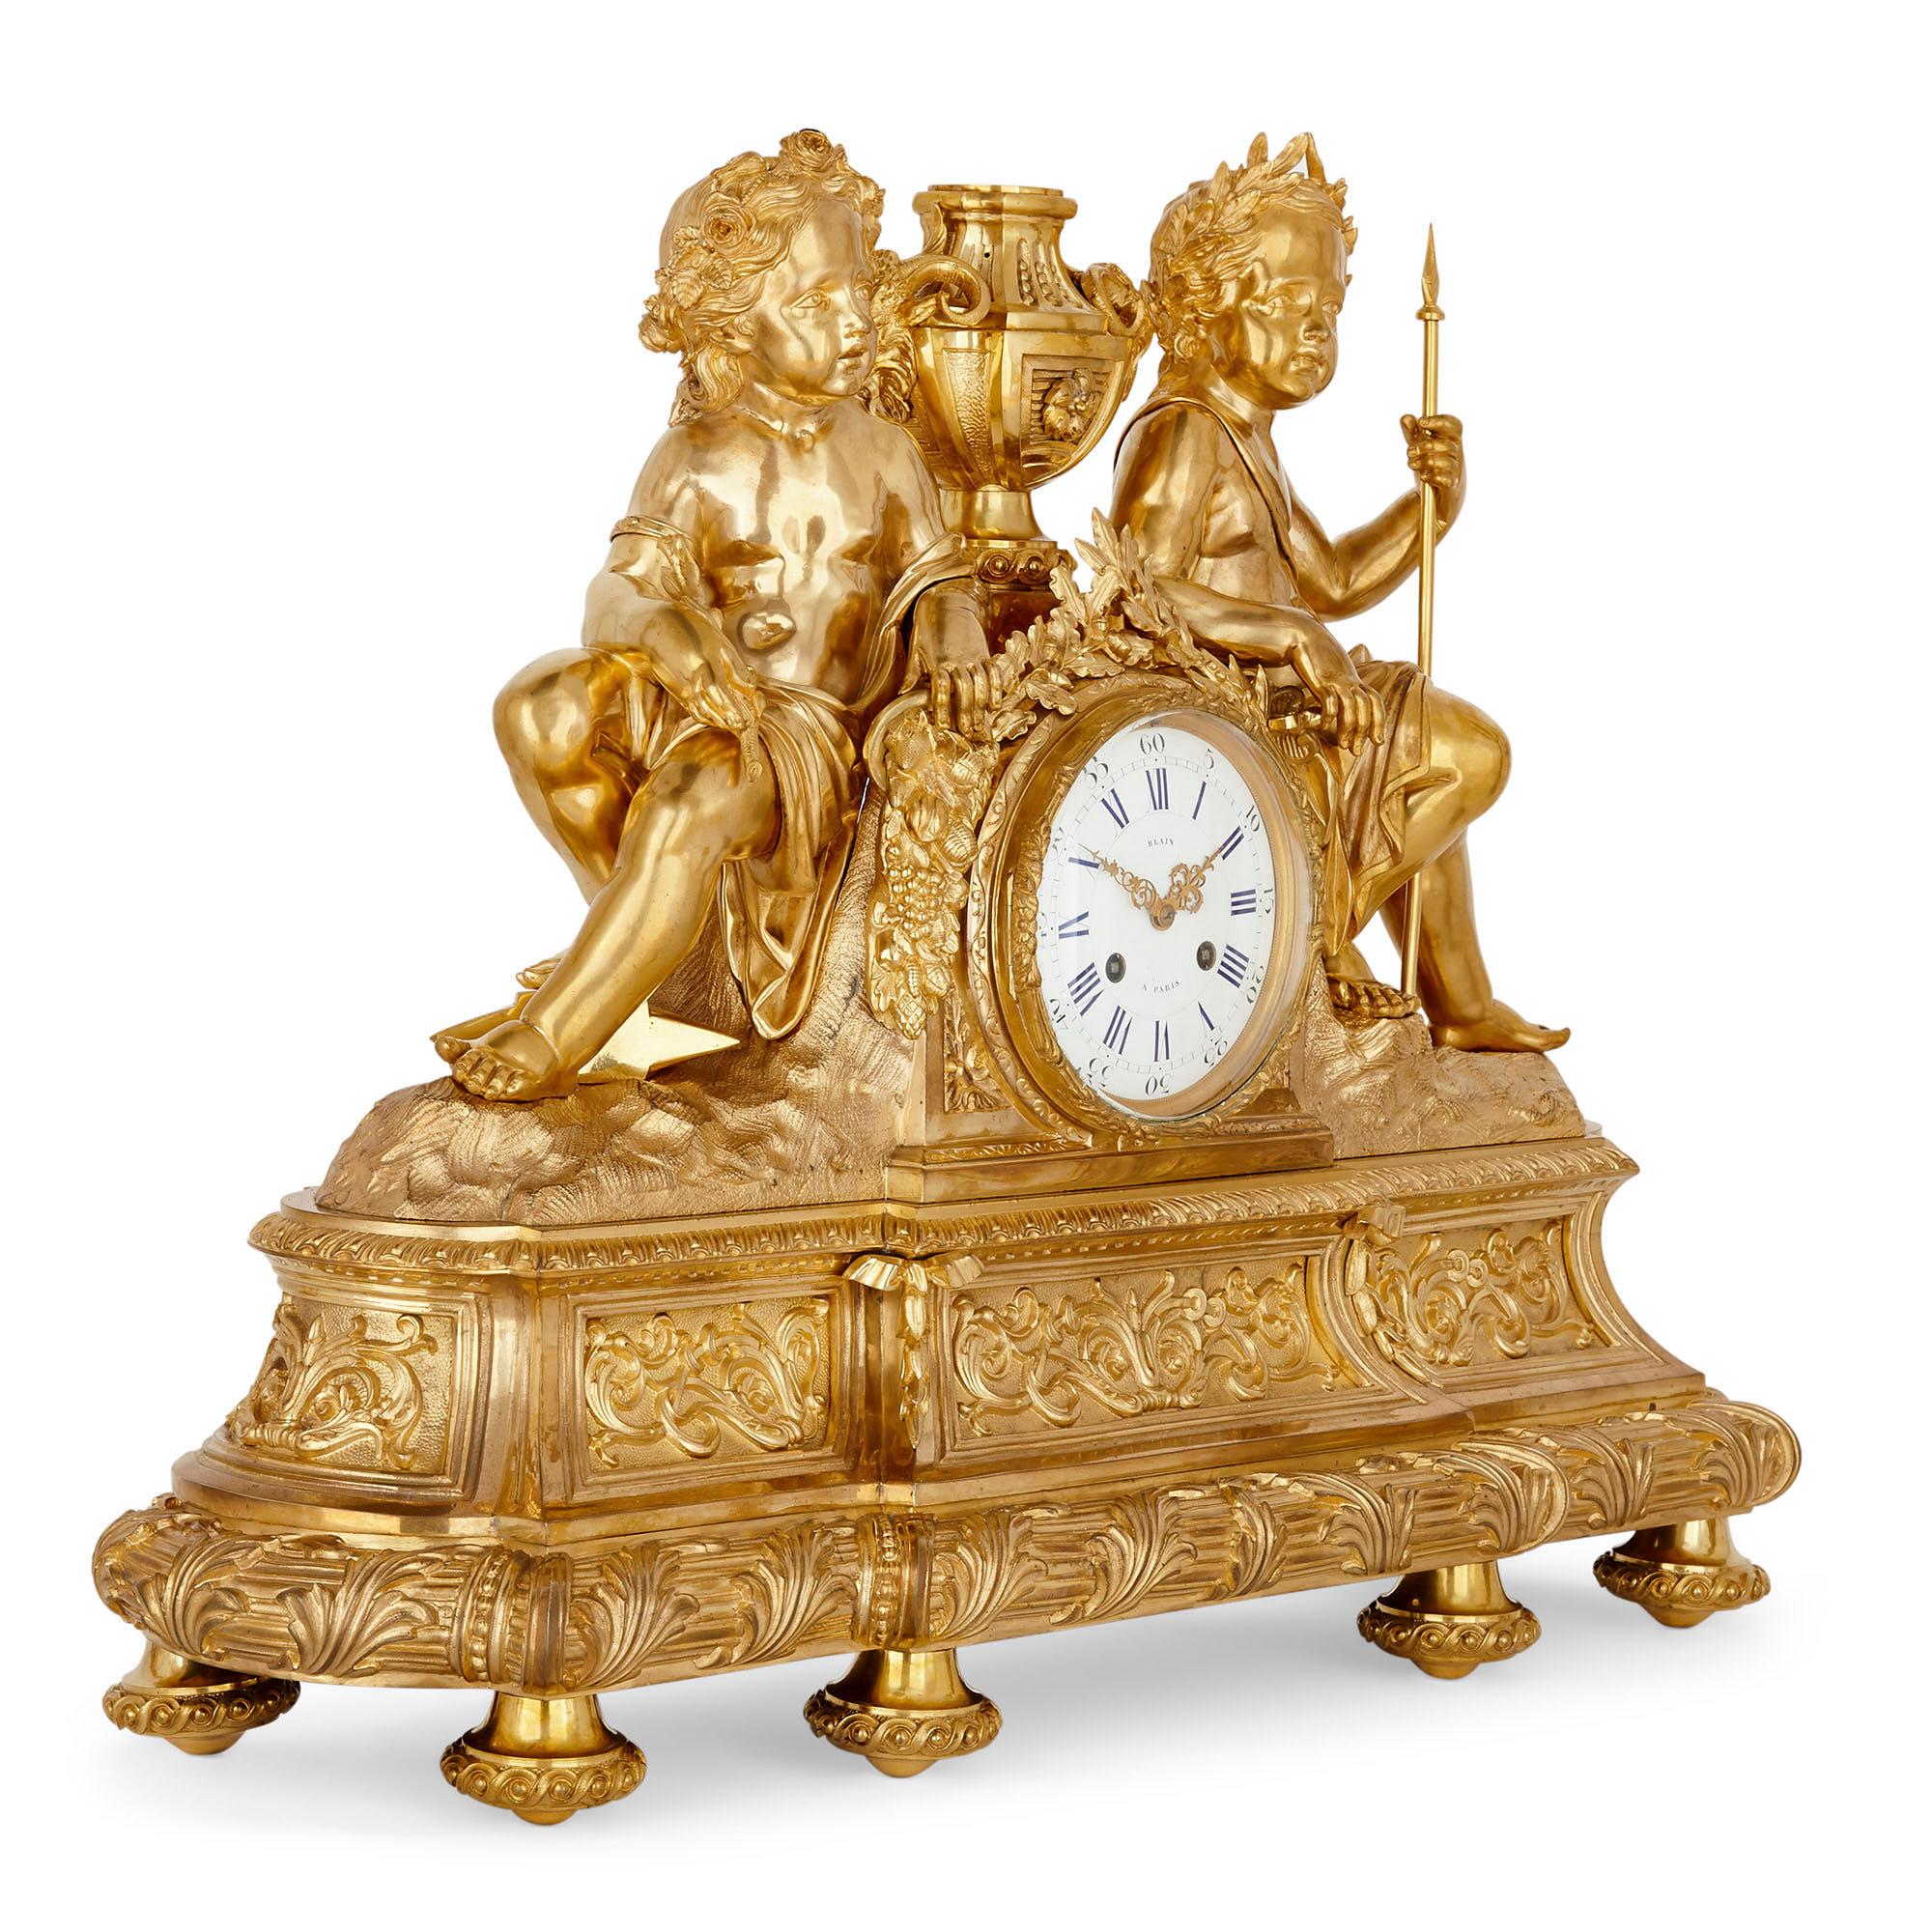 Antike dreiteilige Uhr aus vergoldeter Bronze im neoklassizistischen Stil
Französisch, Ende 19. Jahrhundert
Maße: Uhr: Höhe 57cm, Breite 74cm, Tiefe 23cm.
Kandelaber: Höhe 83cm, Breite 27cm, Tiefe 17cm

Dieses schöne Uhrenset besteht aus einer